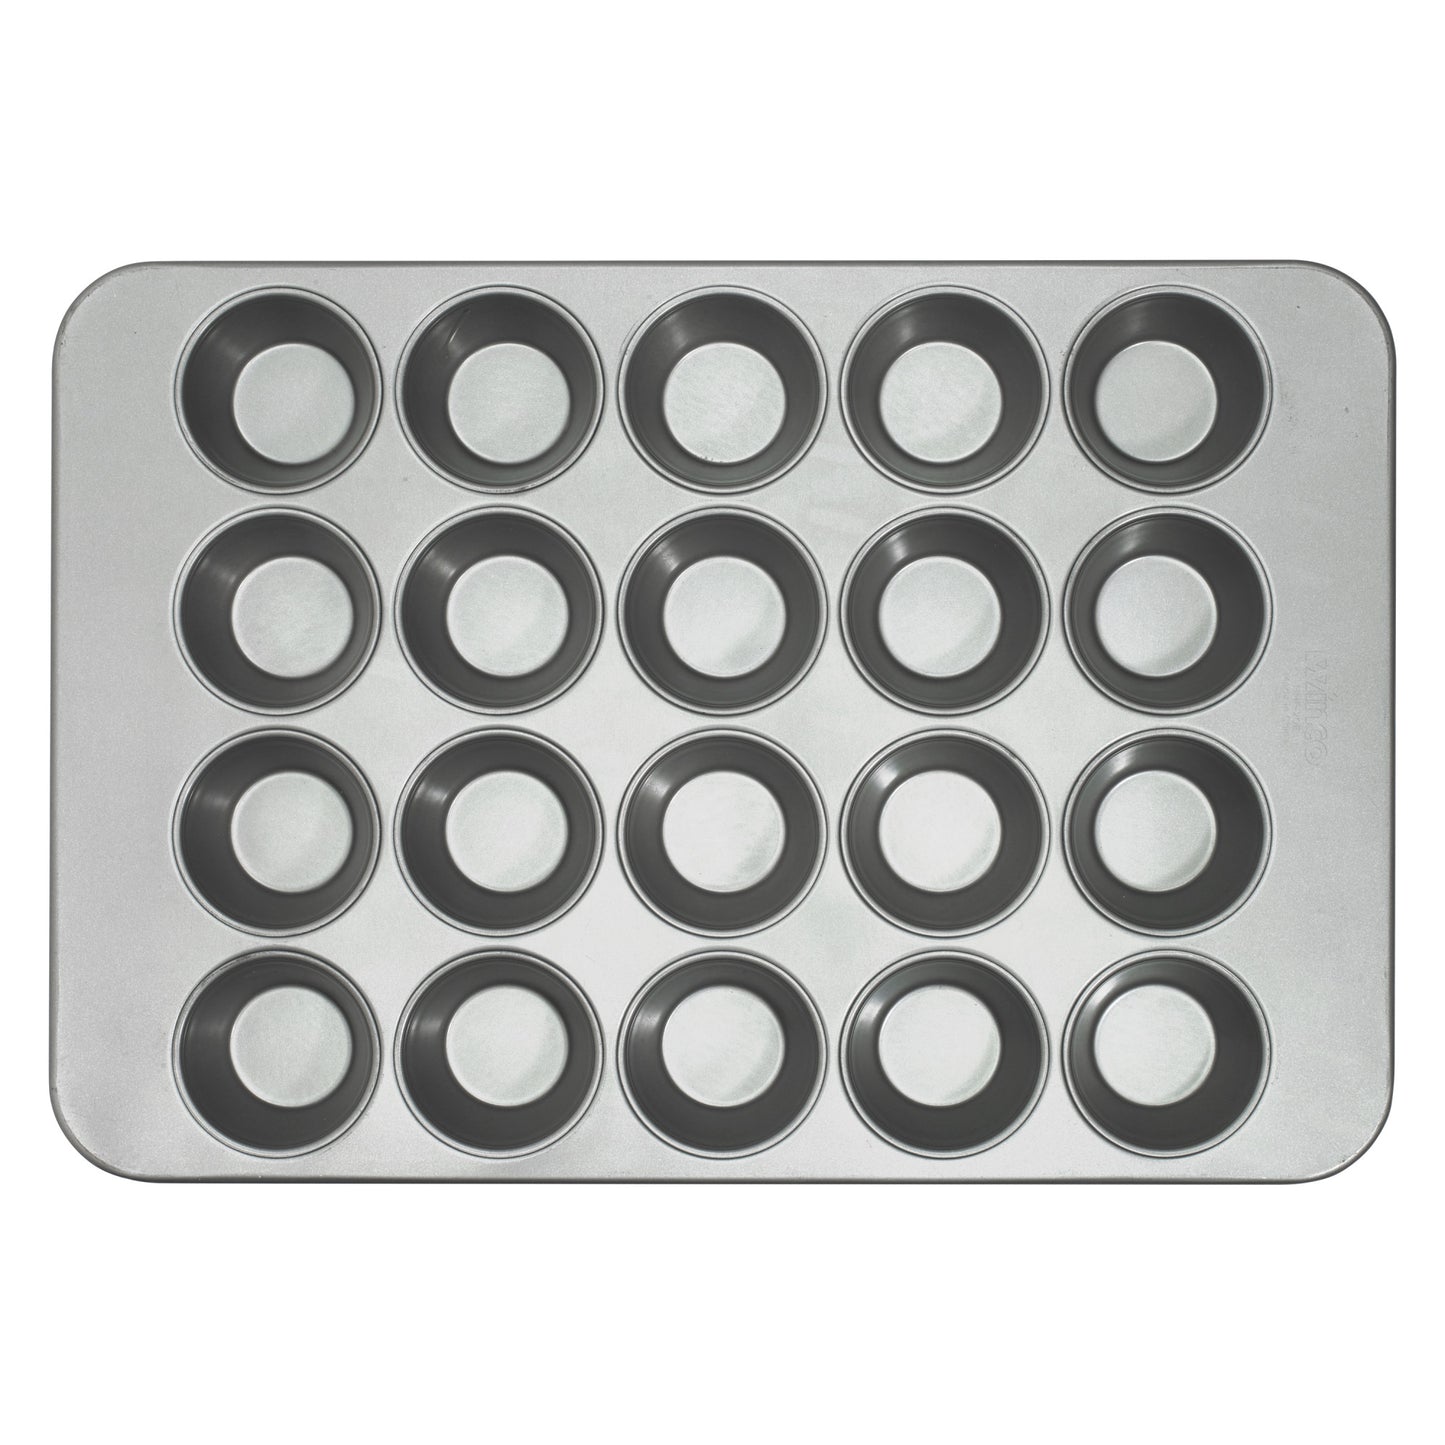 Glazed Aluminized Steel Steel Muffin Pans - 8.2 oz